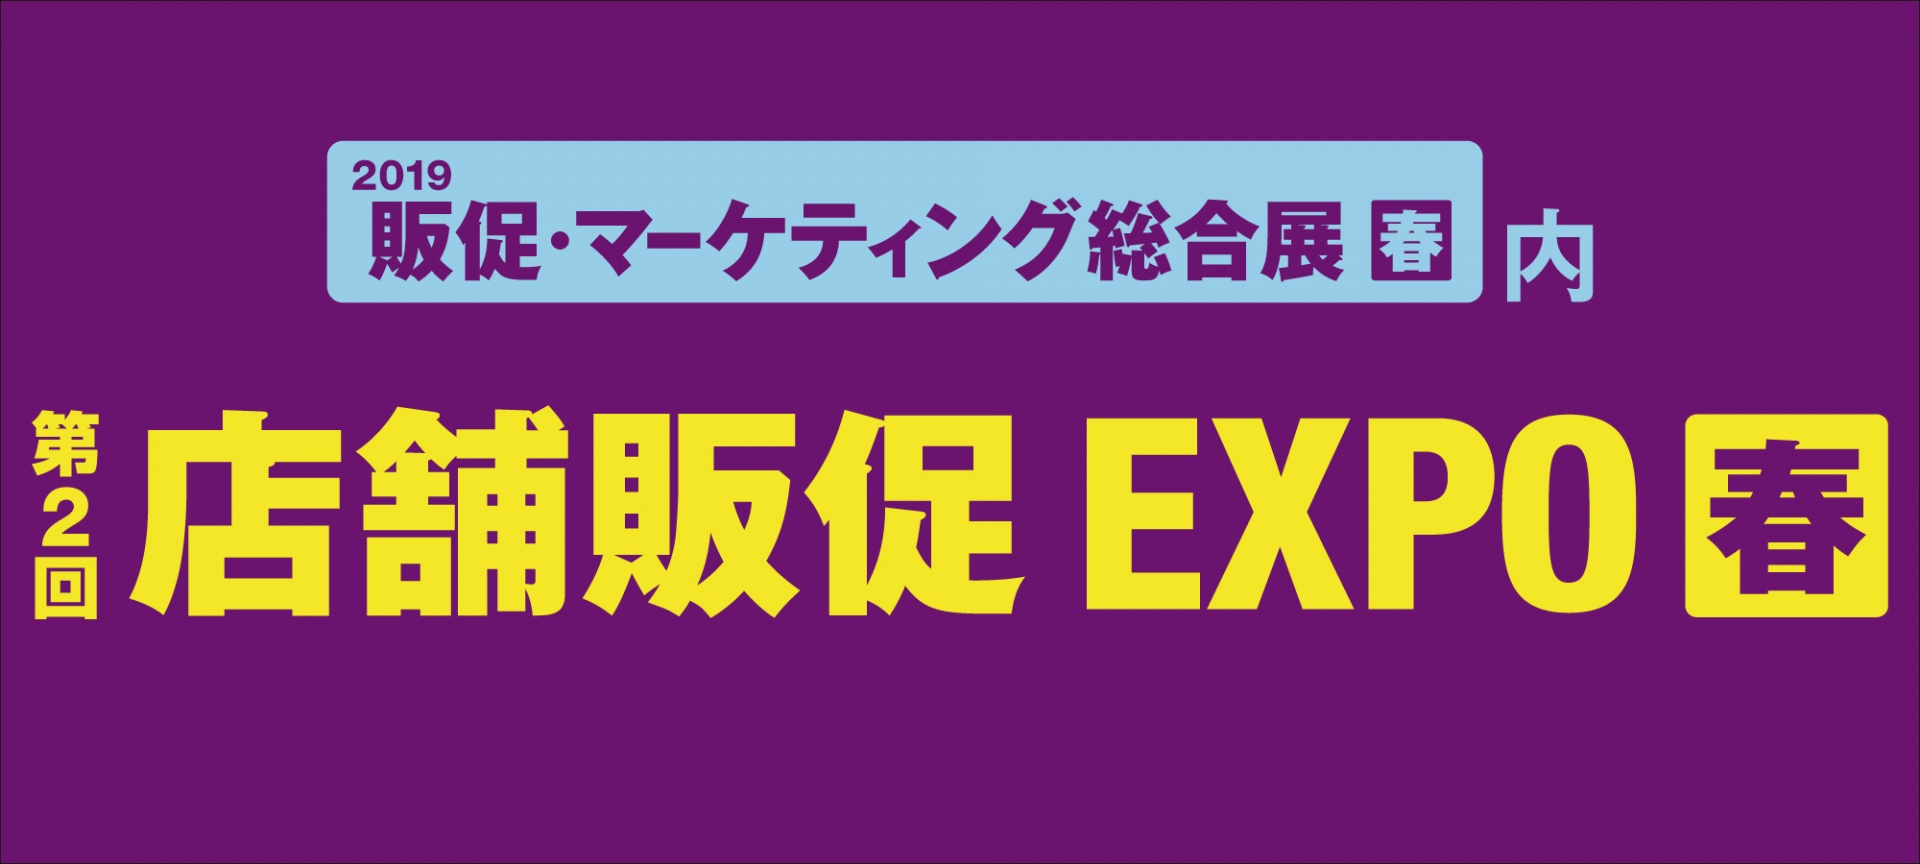 【再掲】第2回店舗販促EXPO春 出展のお知らせ